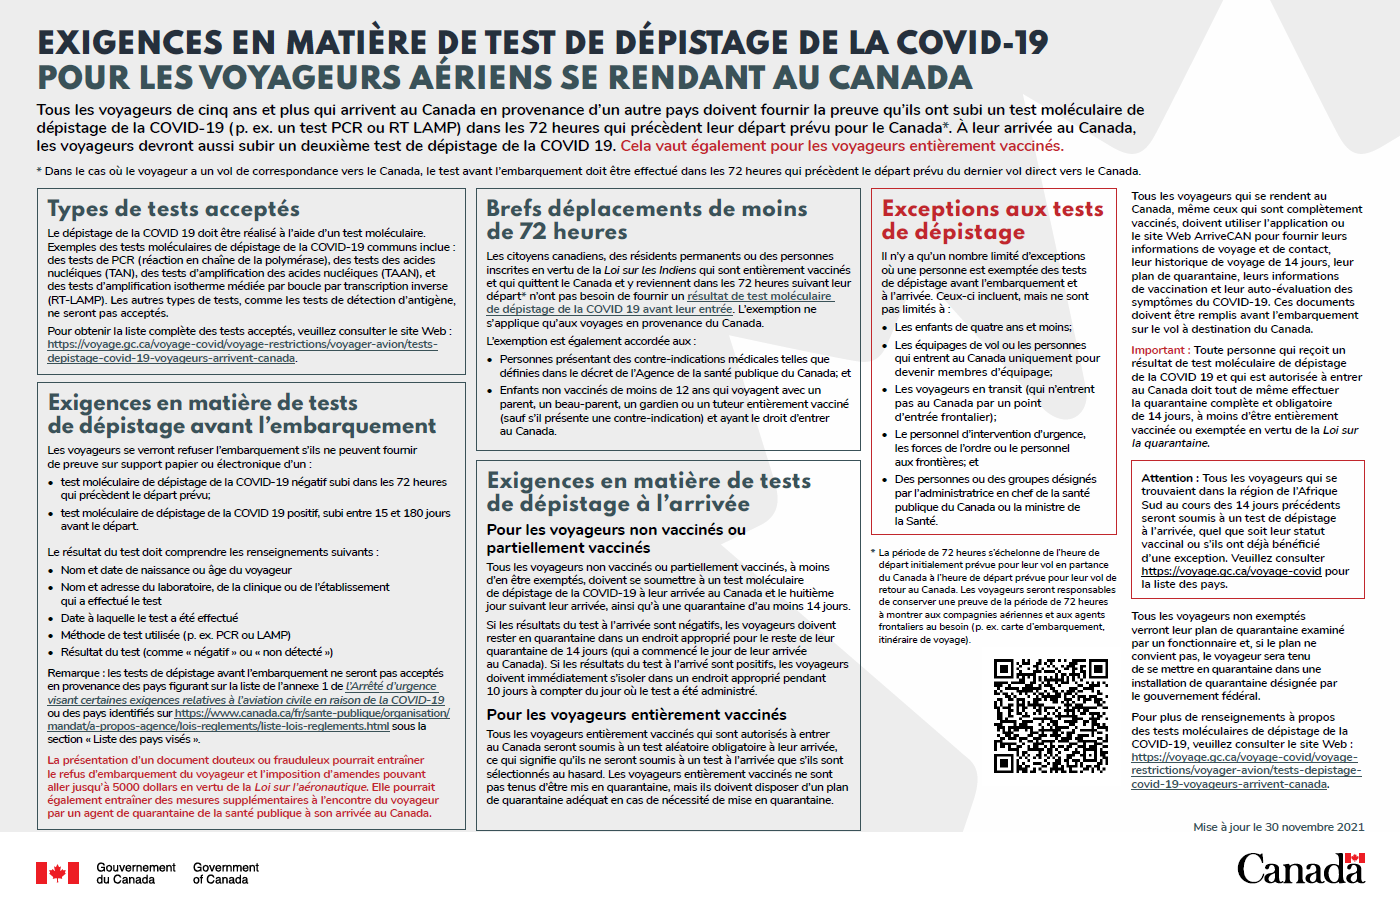 Affiche - Exigences en matière de test de dépistage de la COVID-19 pour les voyageurs aériens se rendant au Canada